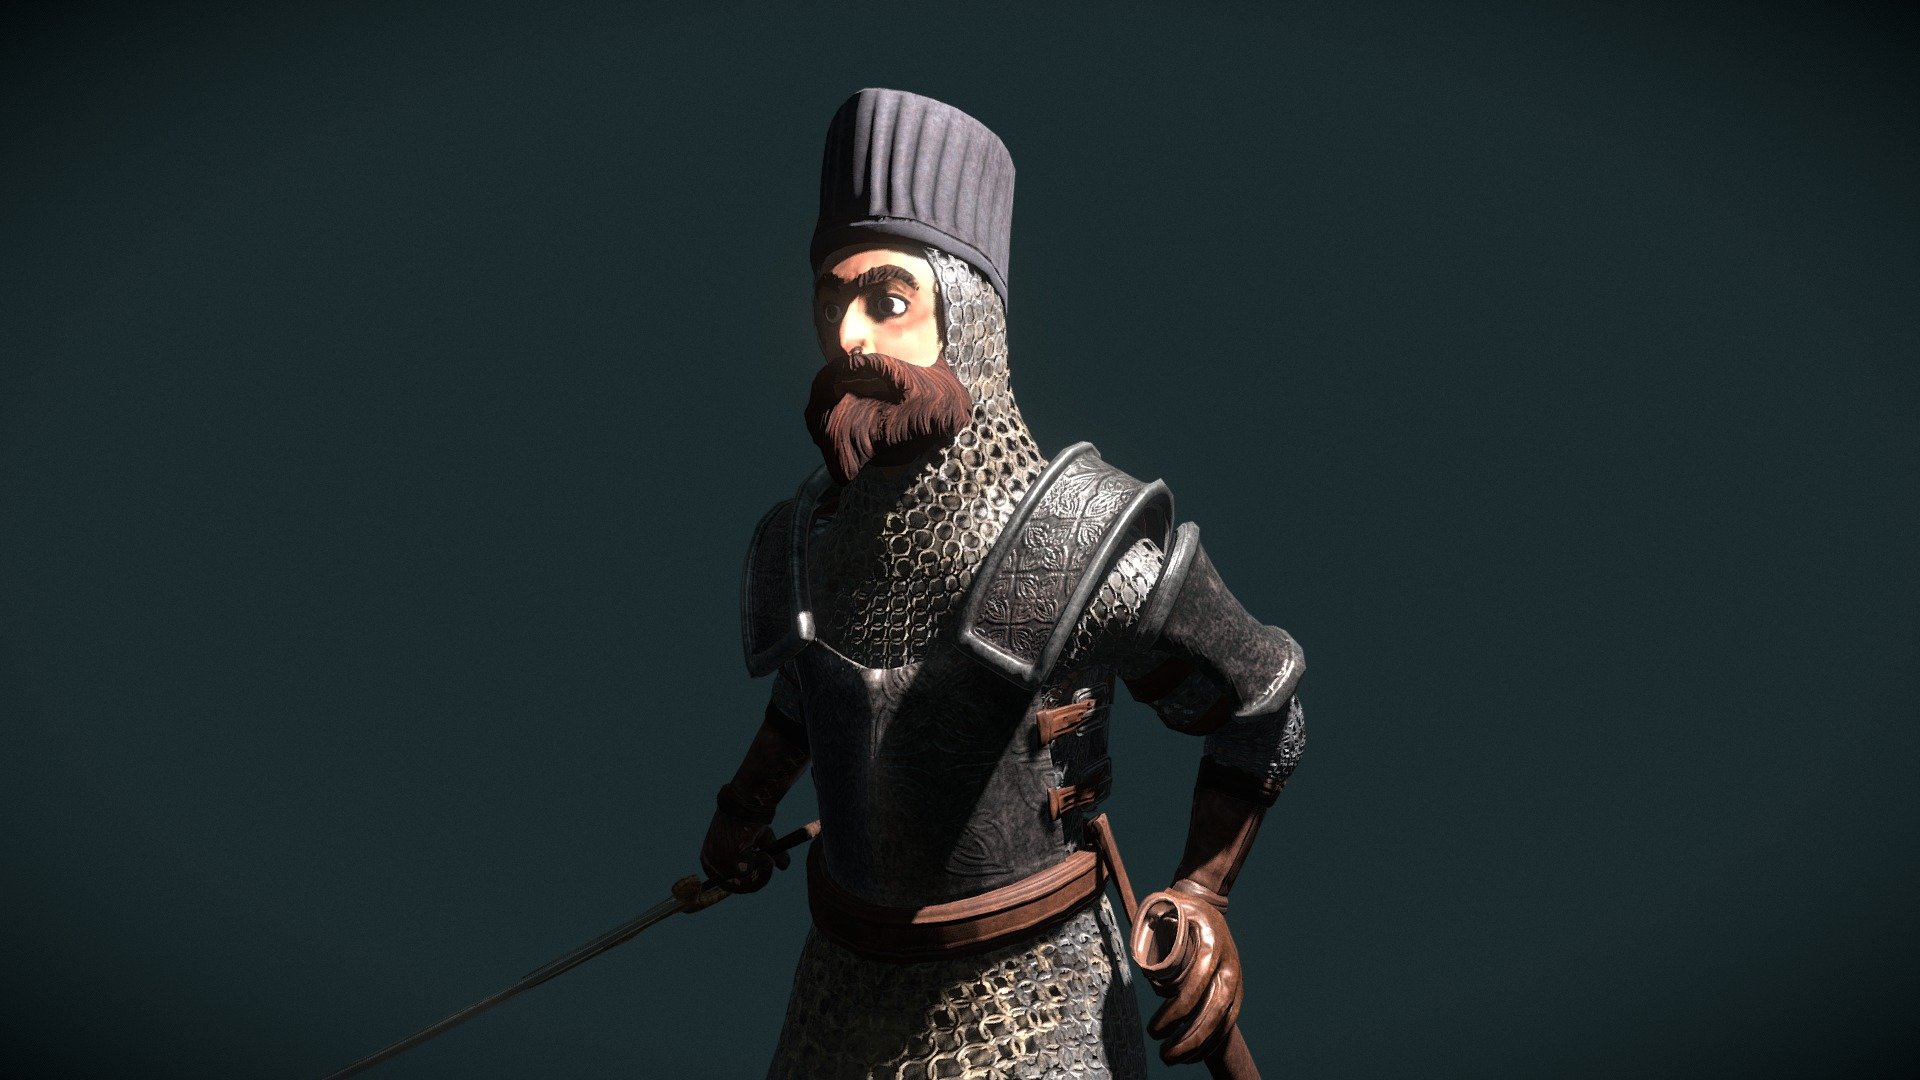 persian immortals armor